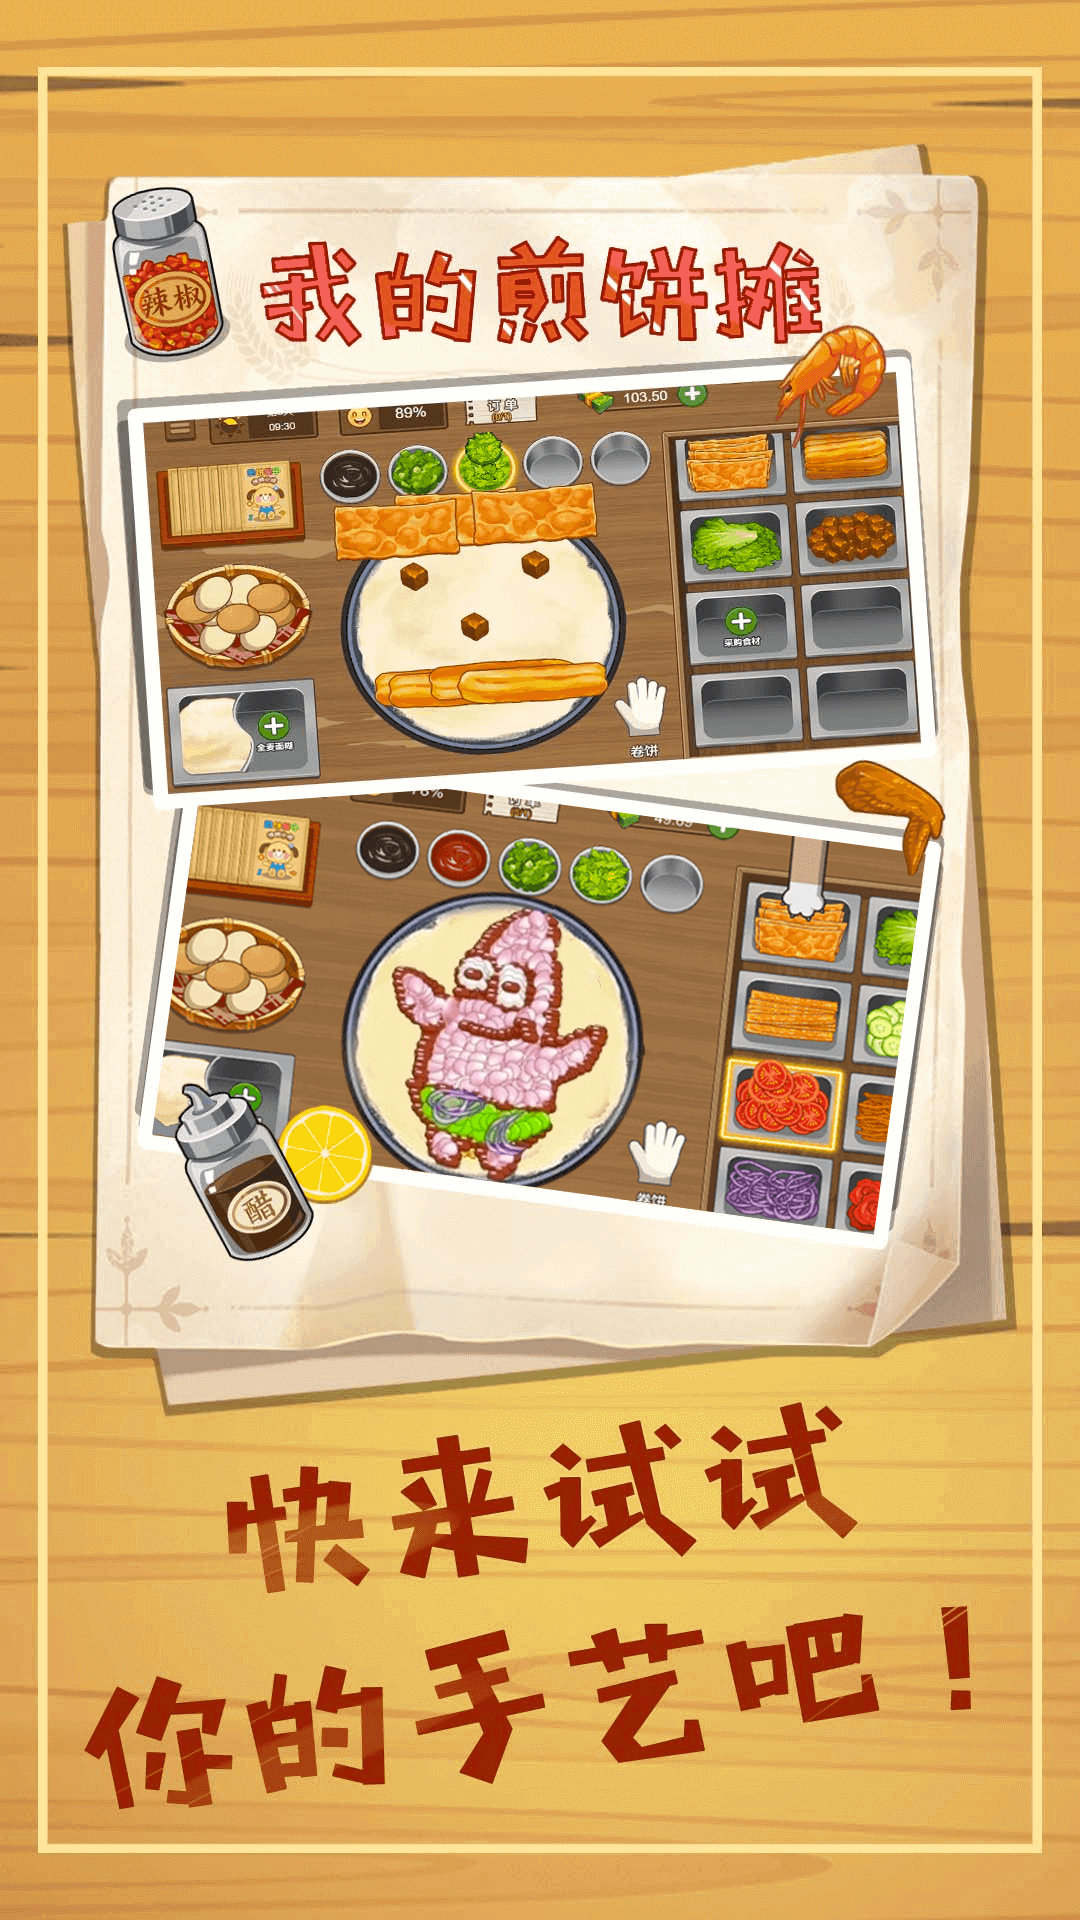 煎饼摊模拟小游戏免费版